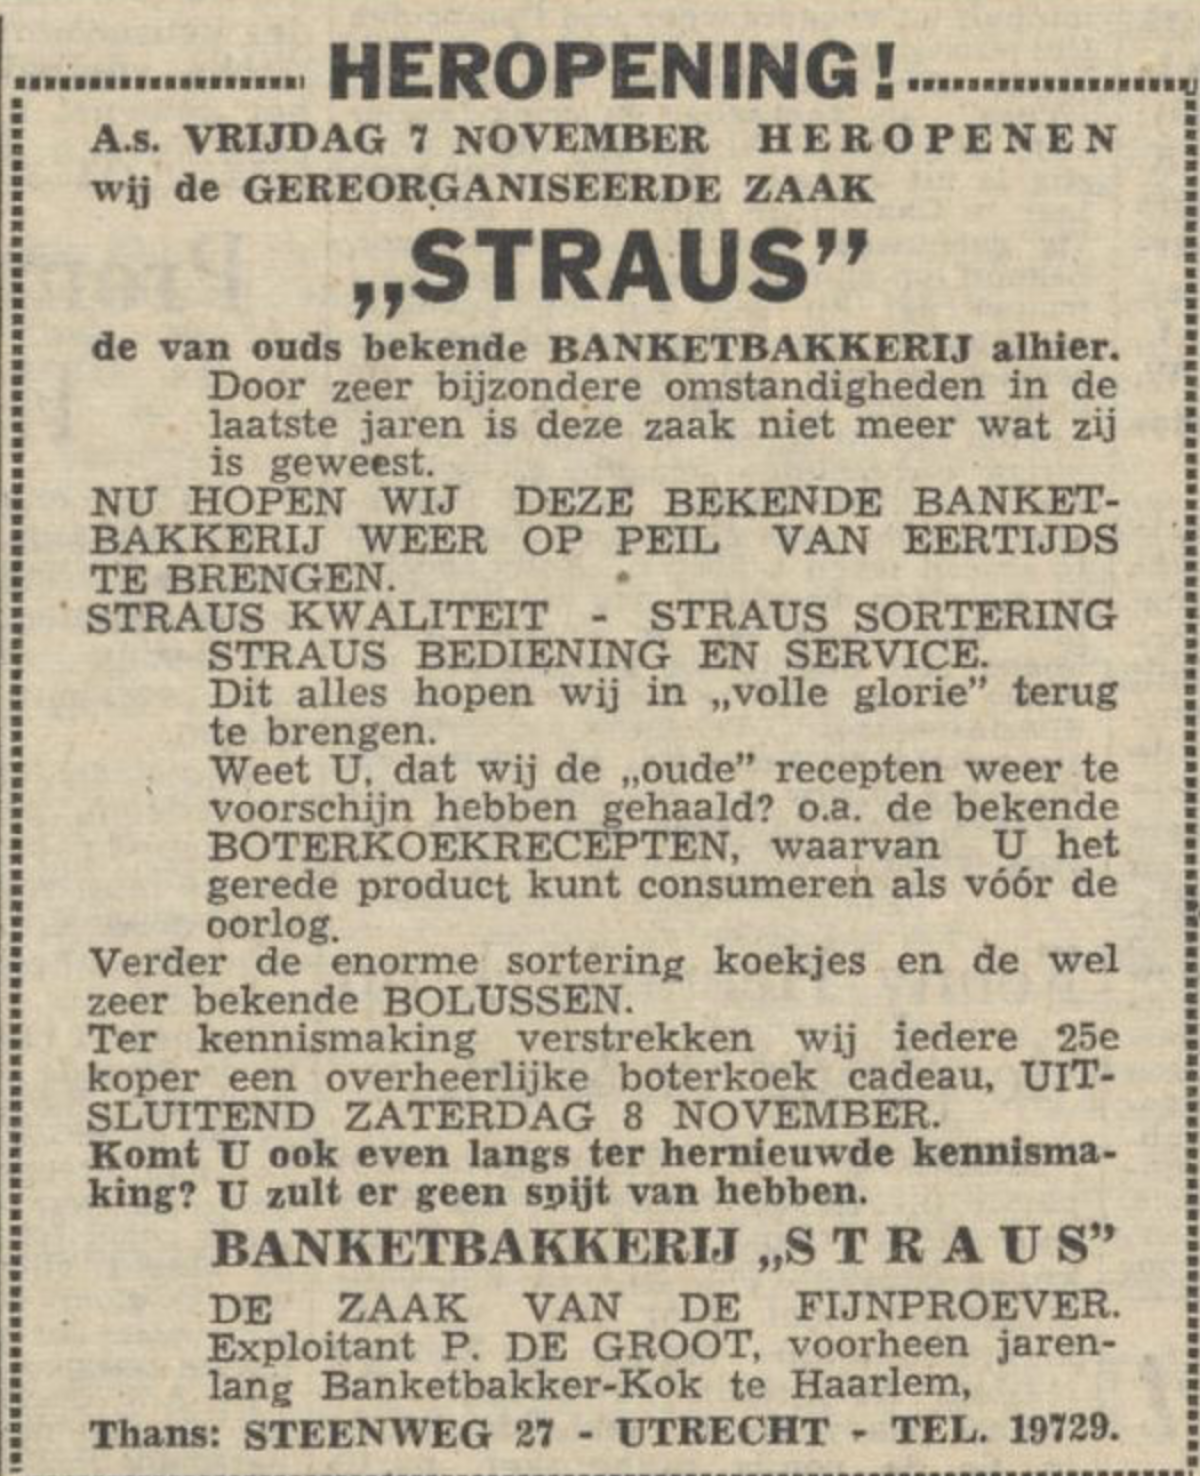 1952. 'Zeer bijzondere omstandigheden' - Utrechts Nieuwsblad